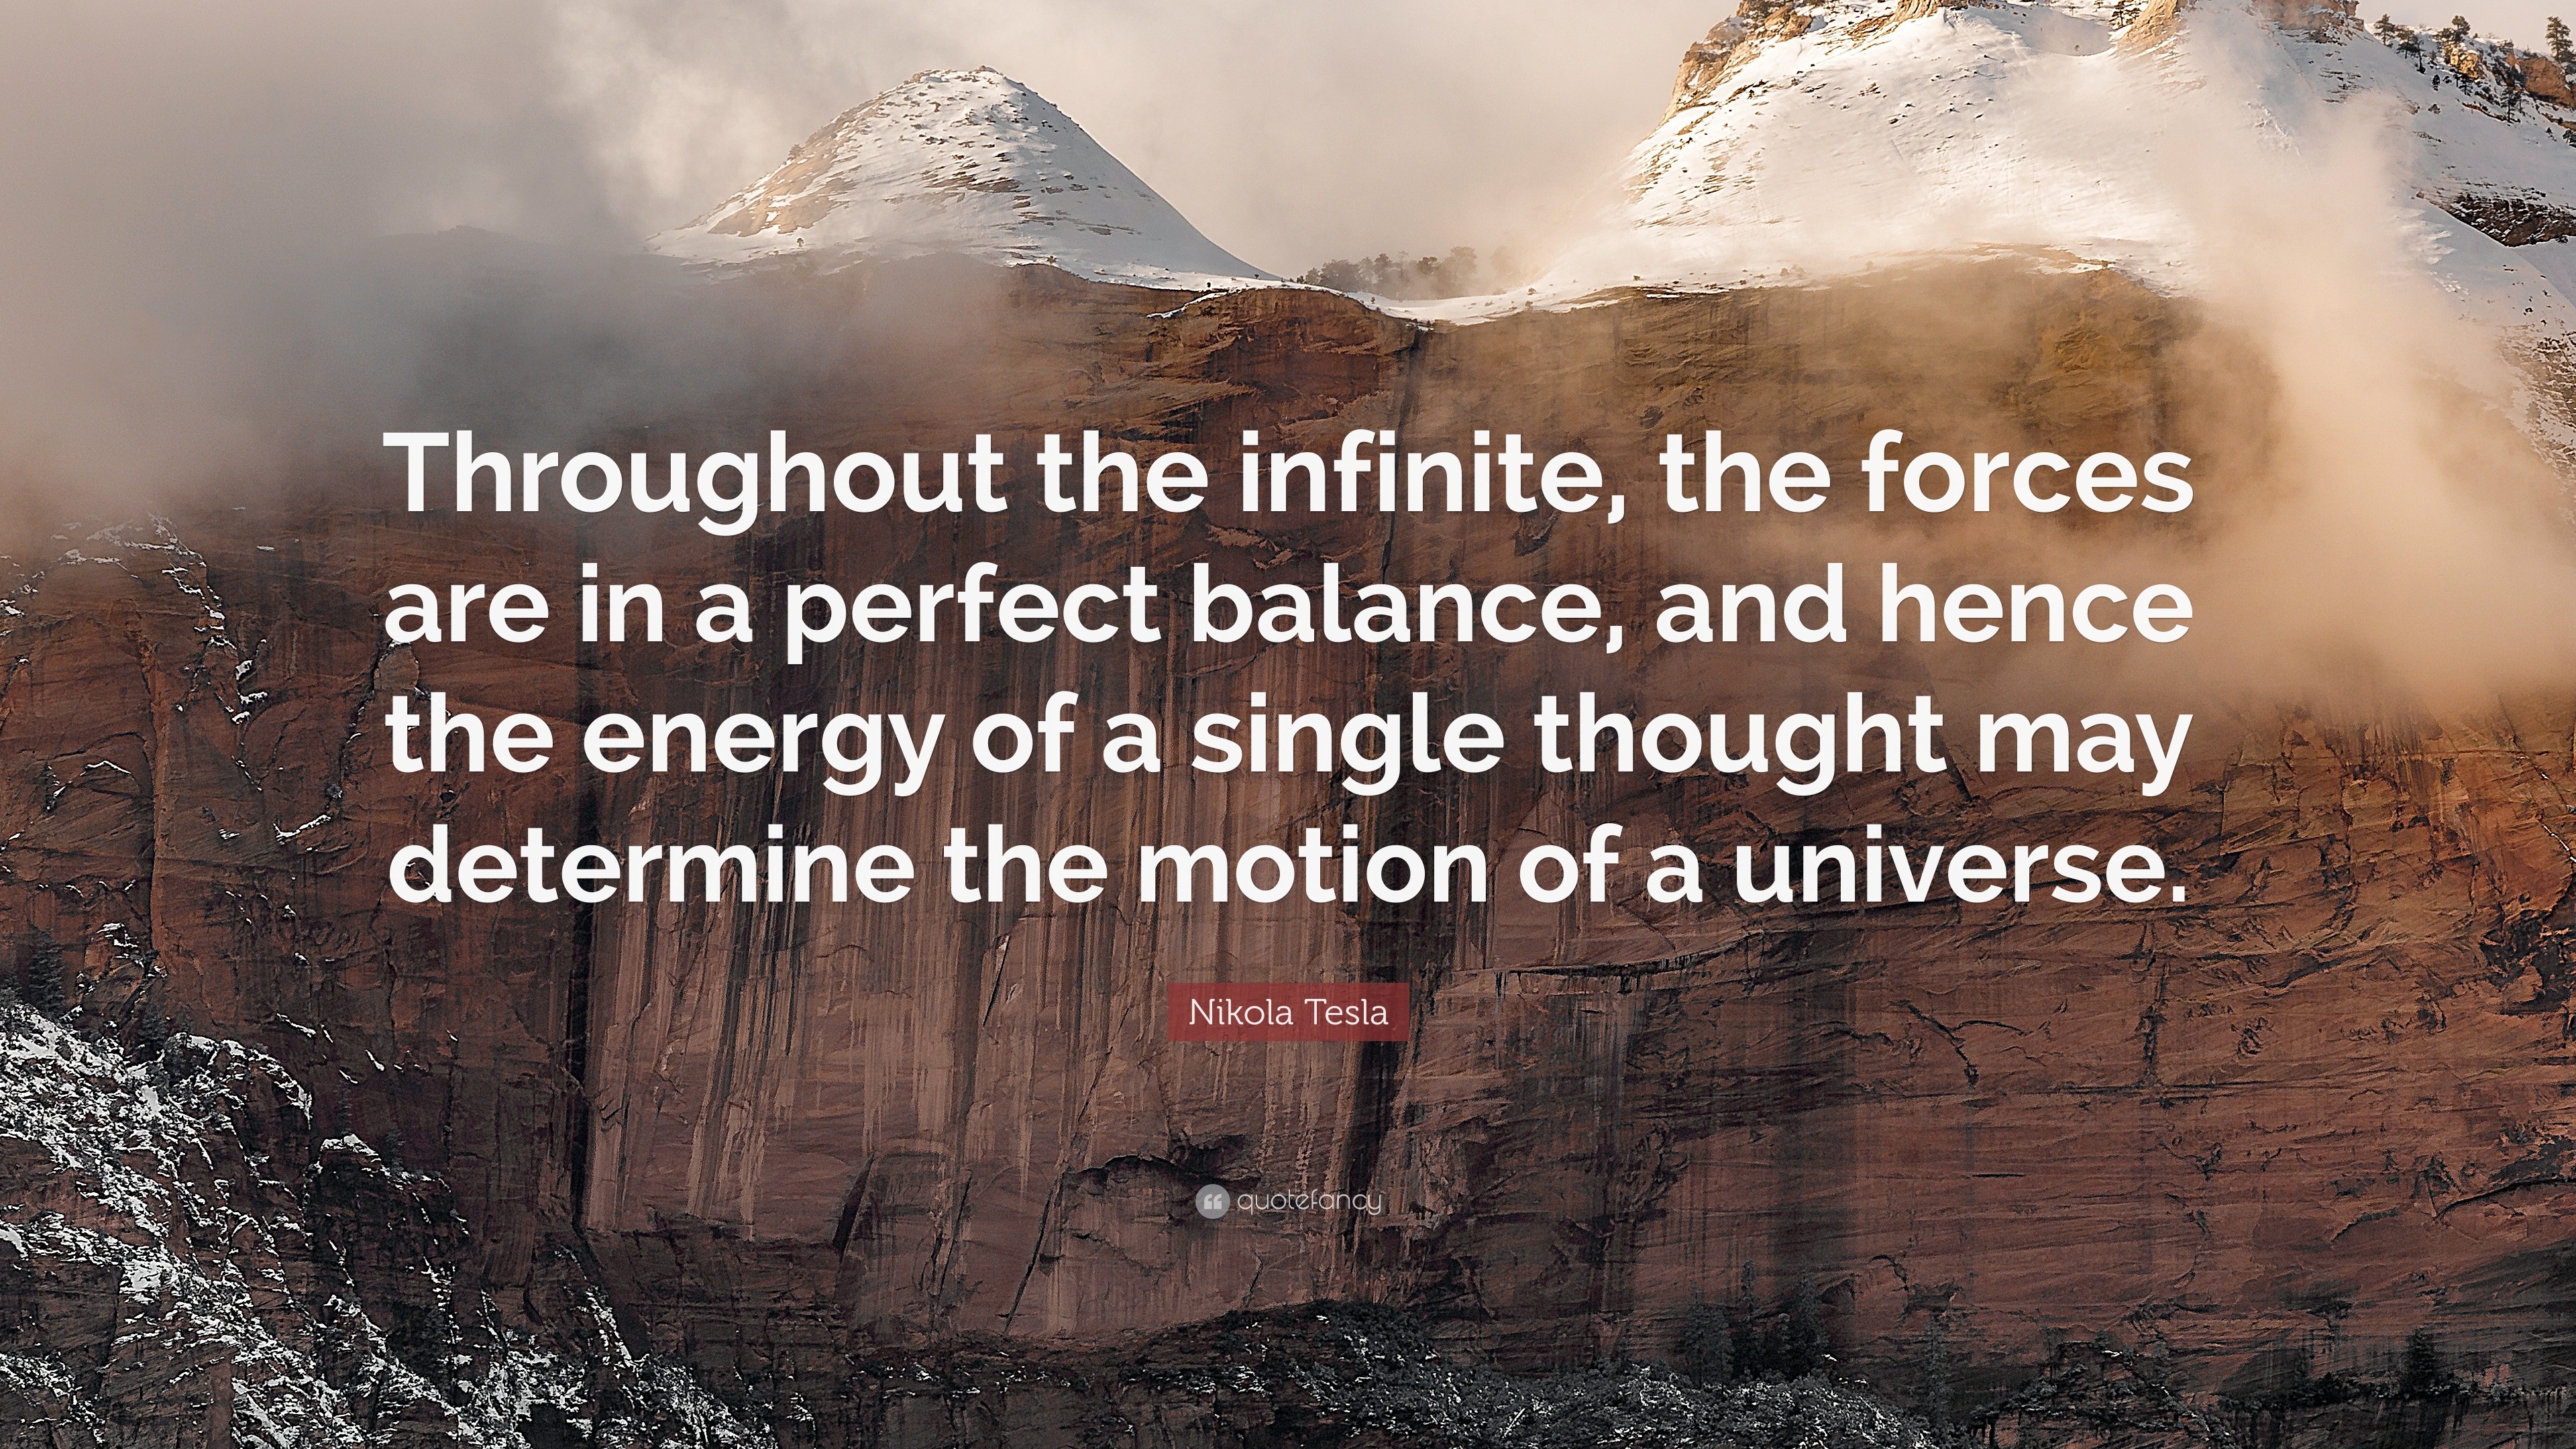 Nikola Tesla Quotes (100 wallpapers) - Quotefancy